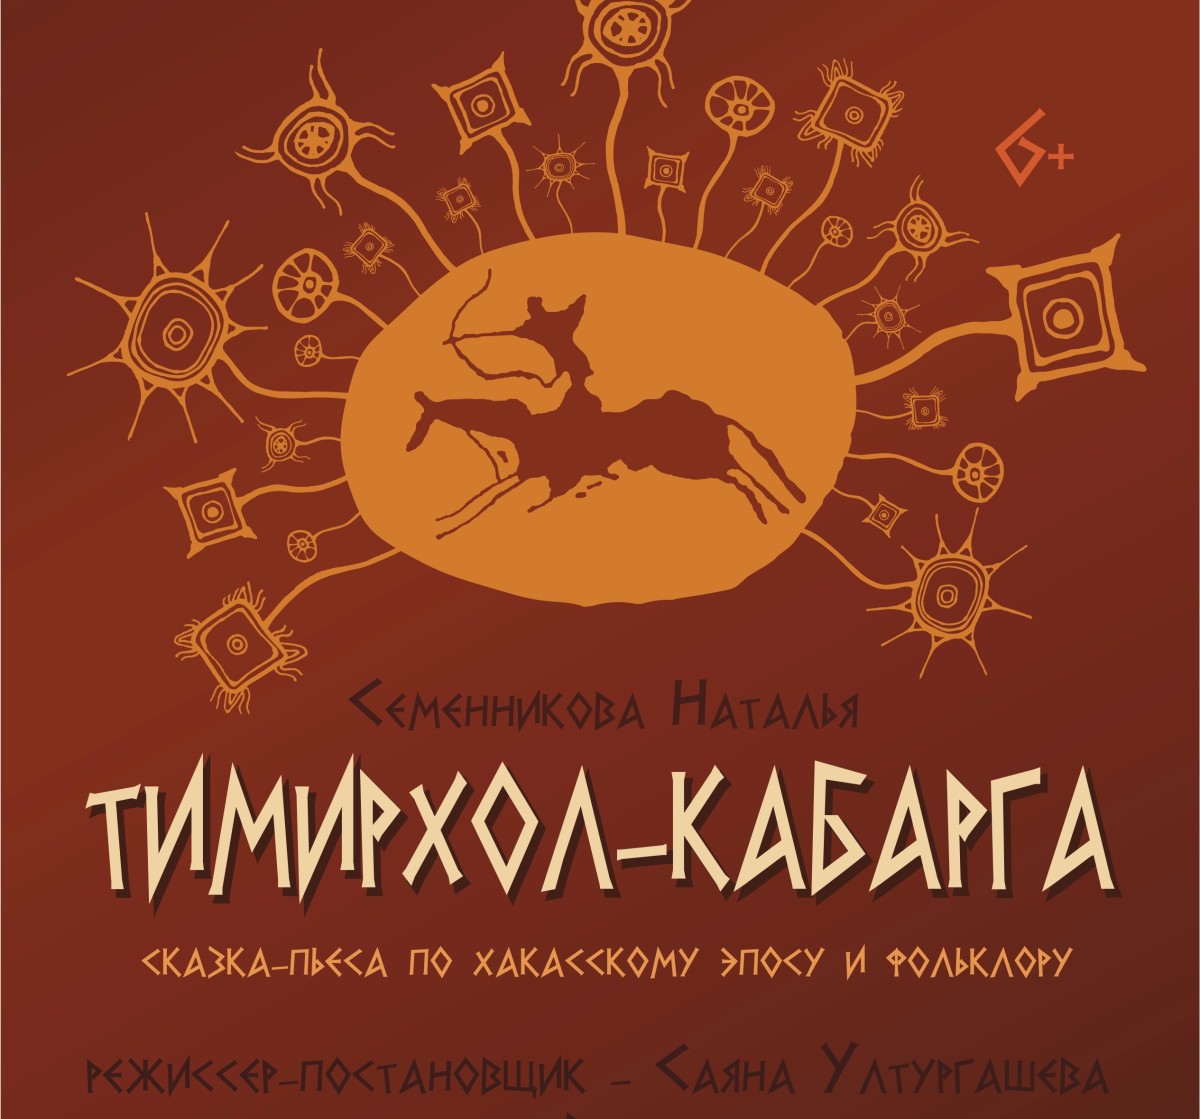 Театр Топанова покажет предпремьерный показ спектакля «Тимирхол-кабарга»